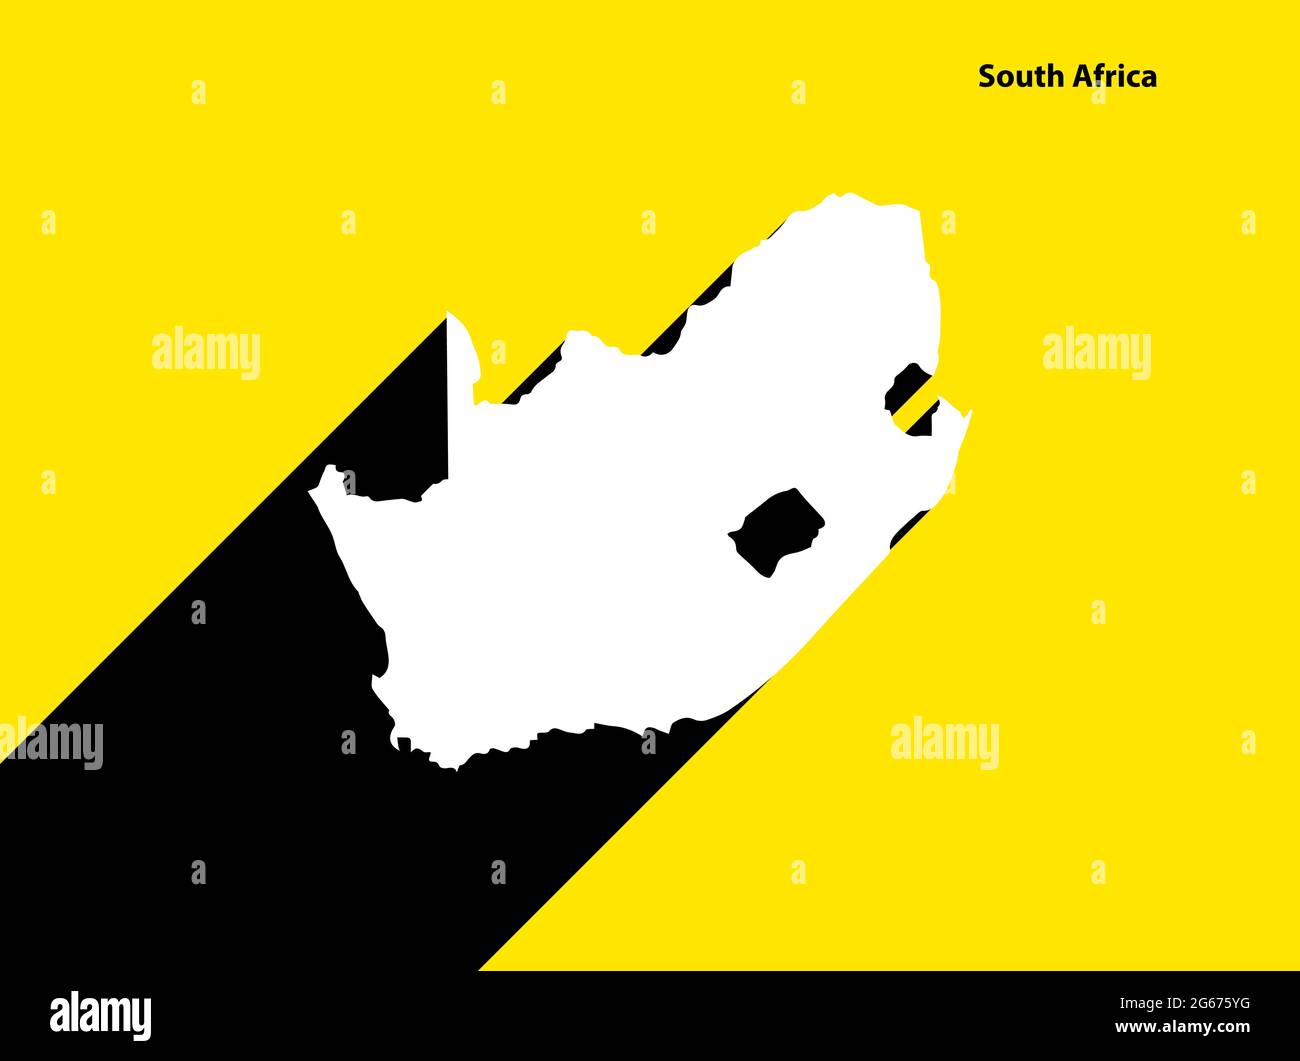 Mappa del Sud Africa su poster retrò con lunga ombra. Segno vintage facile da modificare, manipolare, ridimensionare o colorare. Illustrazione Vettoriale